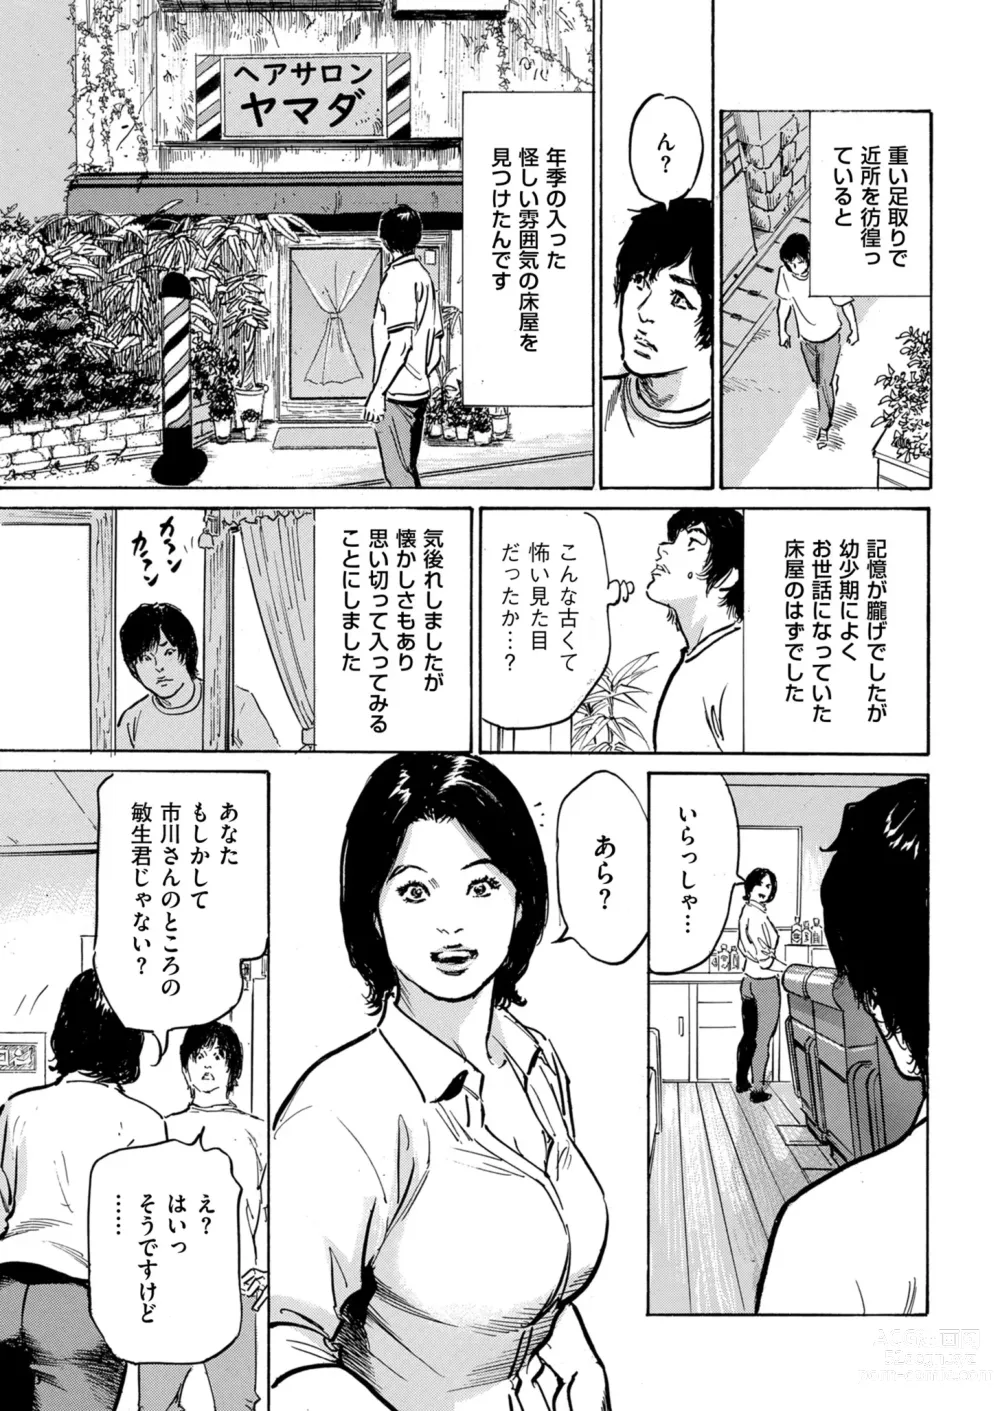 Page 212 of manga Zutto Himitsu ni Shiteita Ano Koto Zenbu Oshiemasu 14 episodes